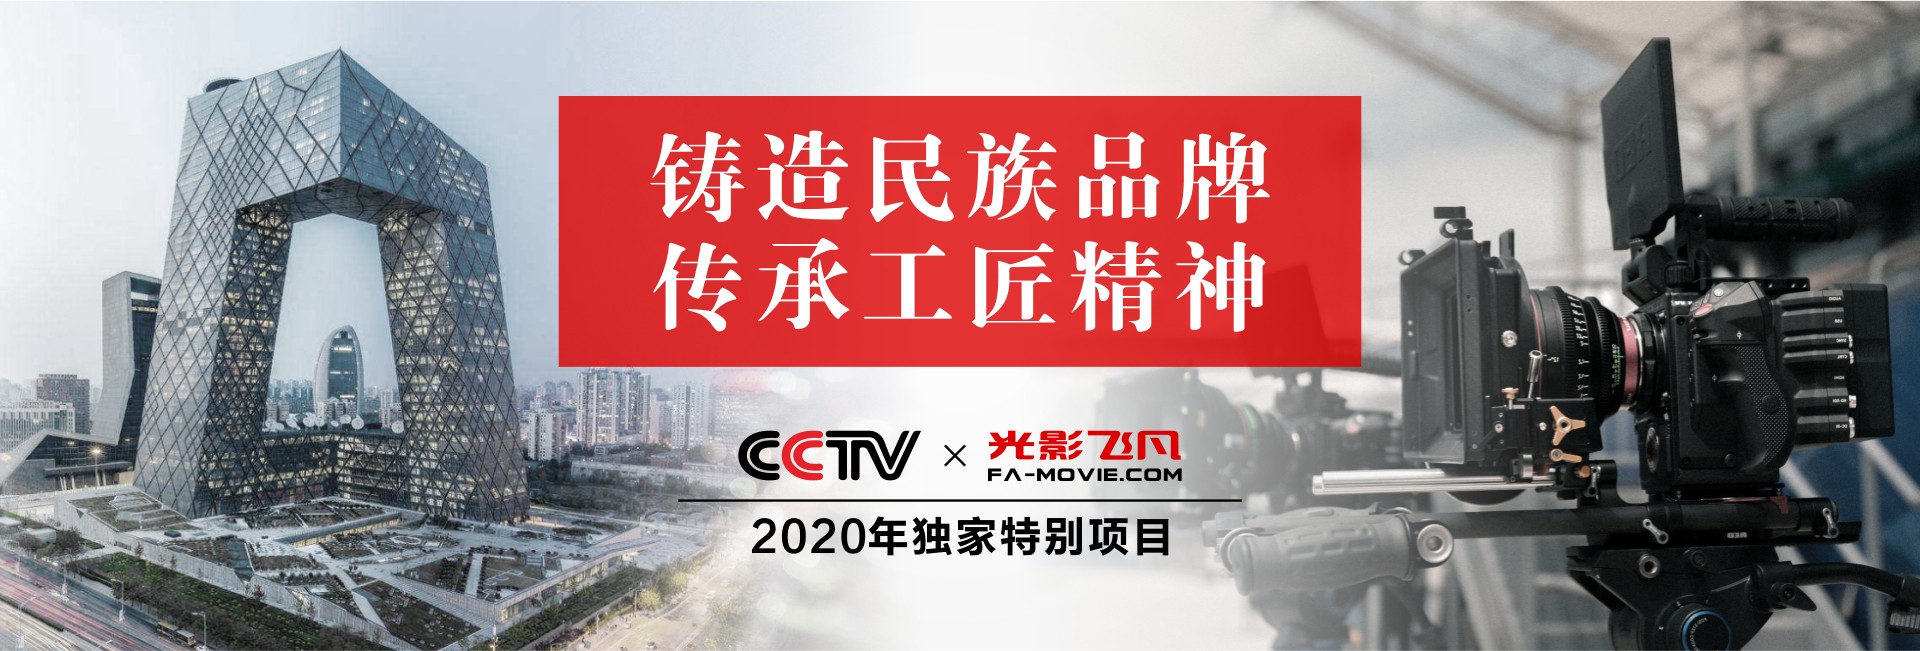 2020年CCTV独家特别项目-001.jpg